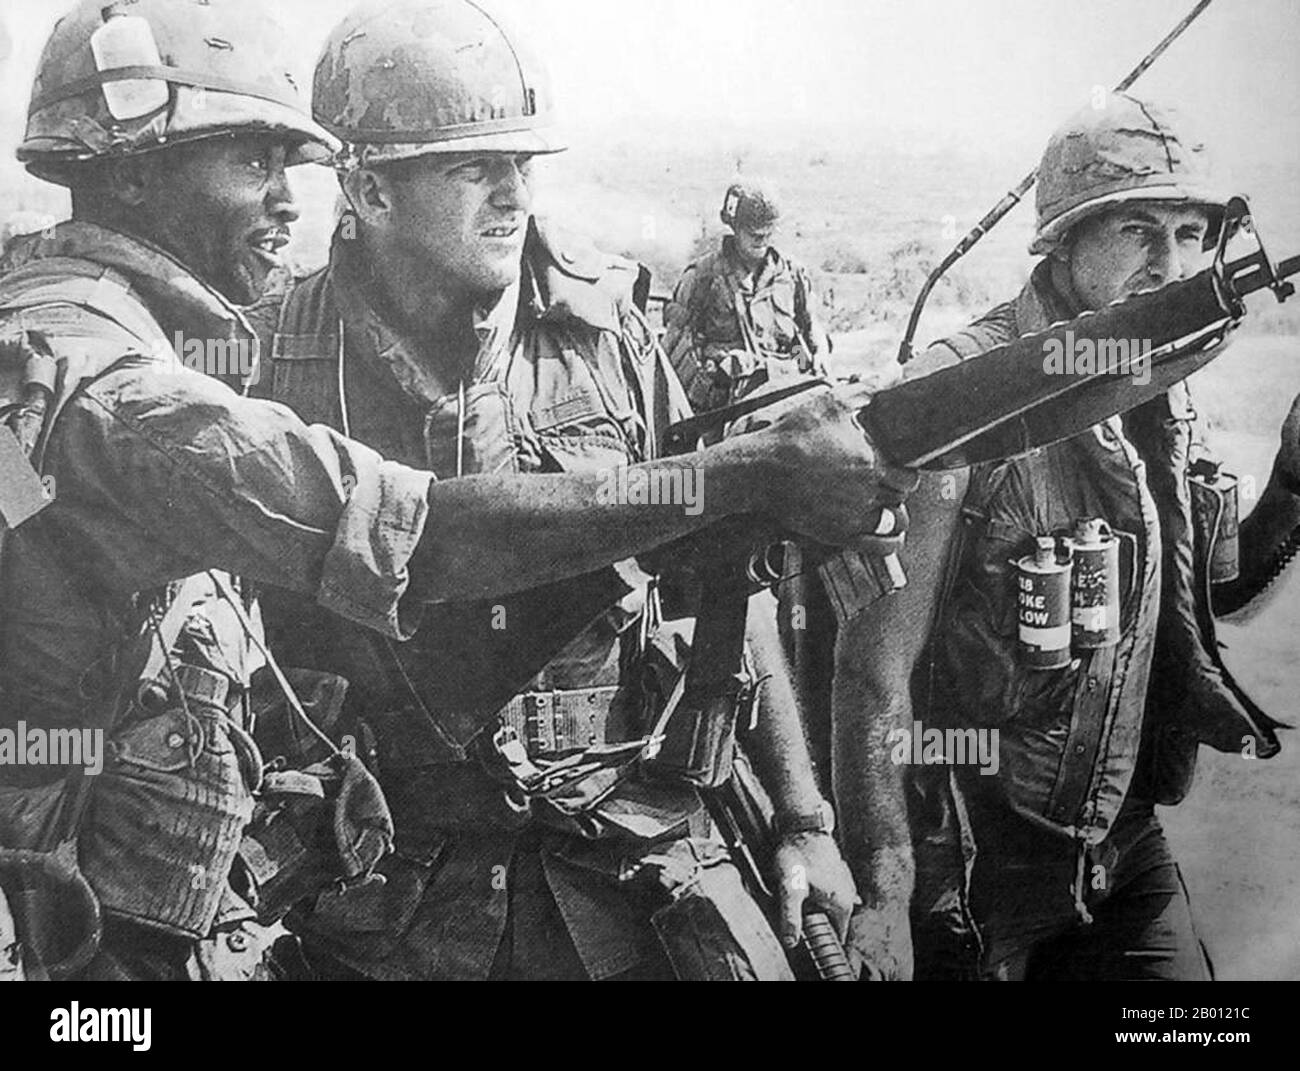 Vietnam: SOLDATEN DER US-Armee sind während der Tet-Offensive 1968 in Hue, Zentralvietnam, im Einsatz. Die Tet-Offensive war eine militärische Kampagne während des Vietnamkrieges, die am 31. Januar 1968 begann. Regelmäßige und unregelmäßige Streitkräfte der Volksarmee Vietnams sowie Widerstandskämpfer des NLF (Viet Cong) kämpften gegen die Streitkräfte der Republik Vietnam (Südvietnam), der Vereinigten Staaten und ihrer Verbündeten. Ziel der Offensive war es, militärische und zivile Kommandozentralen und Kontrollzentren in ganz Südvietnam zu schlagen und einen allgemeinen Aufstand unter der Bevölkerung zu entfachen. Stockfoto